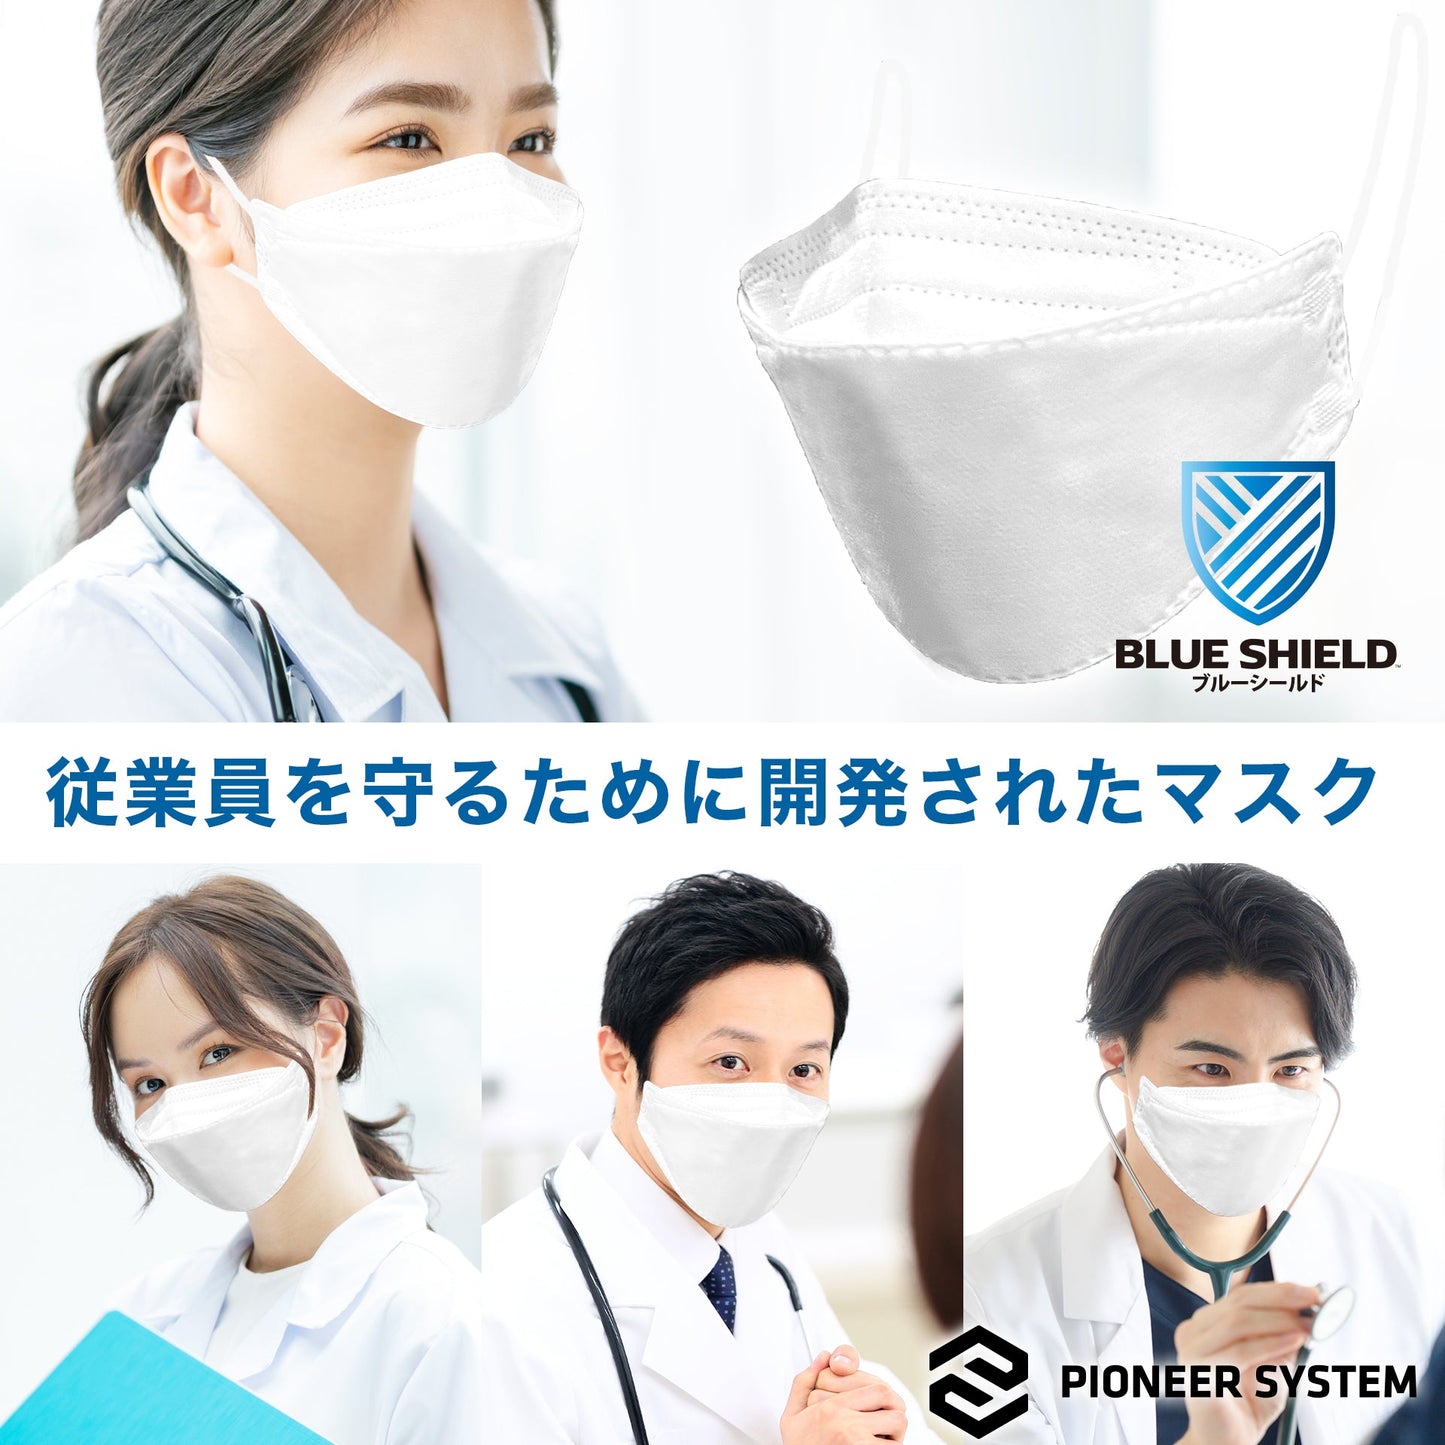 【30枚入】ブルーシールドマスク Fタイプ 抗菌 5層 医療用クラス3